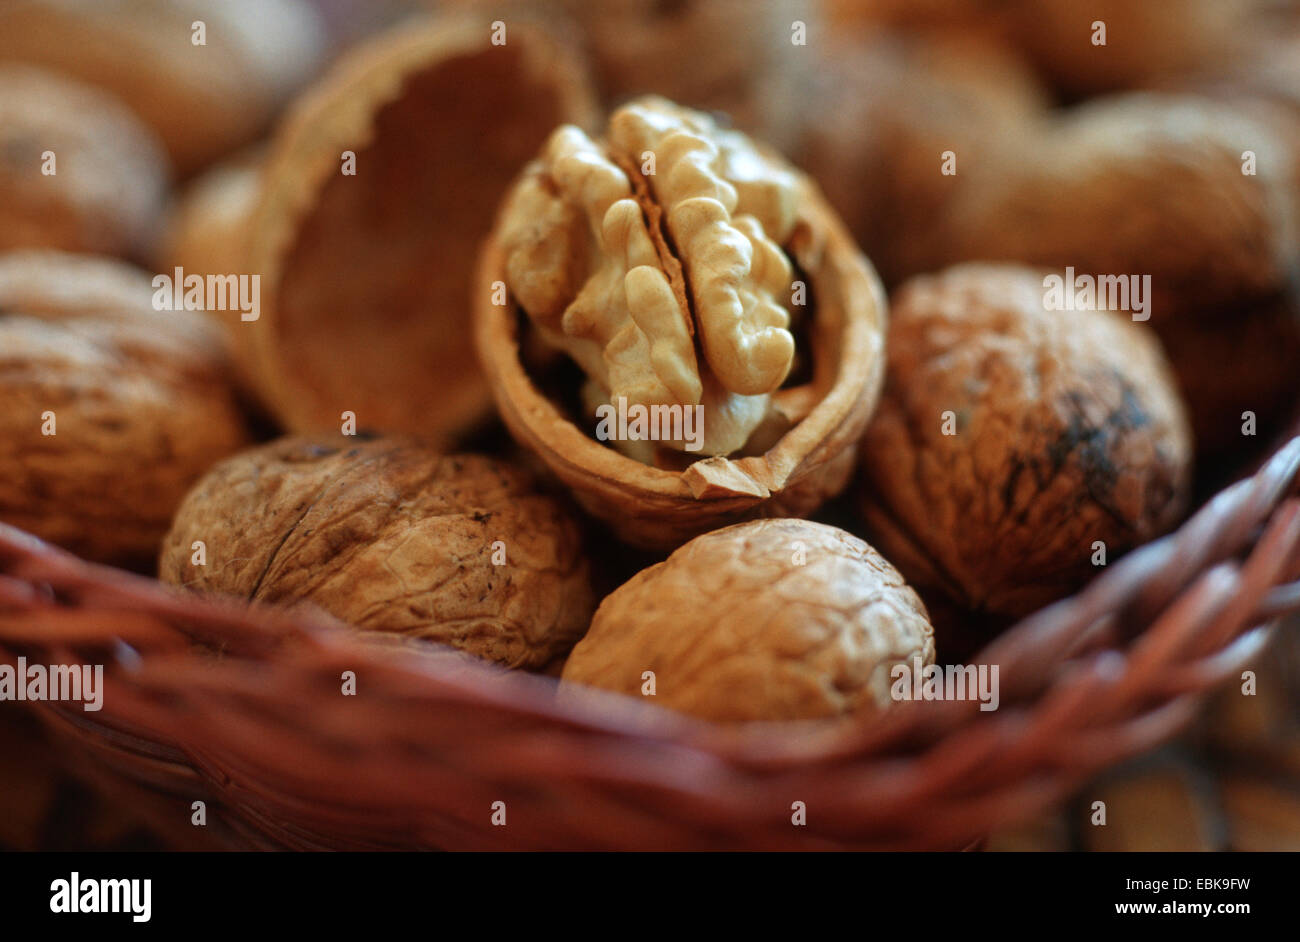 walnut (Juglans regia), walnuts in a basket Stock Photo